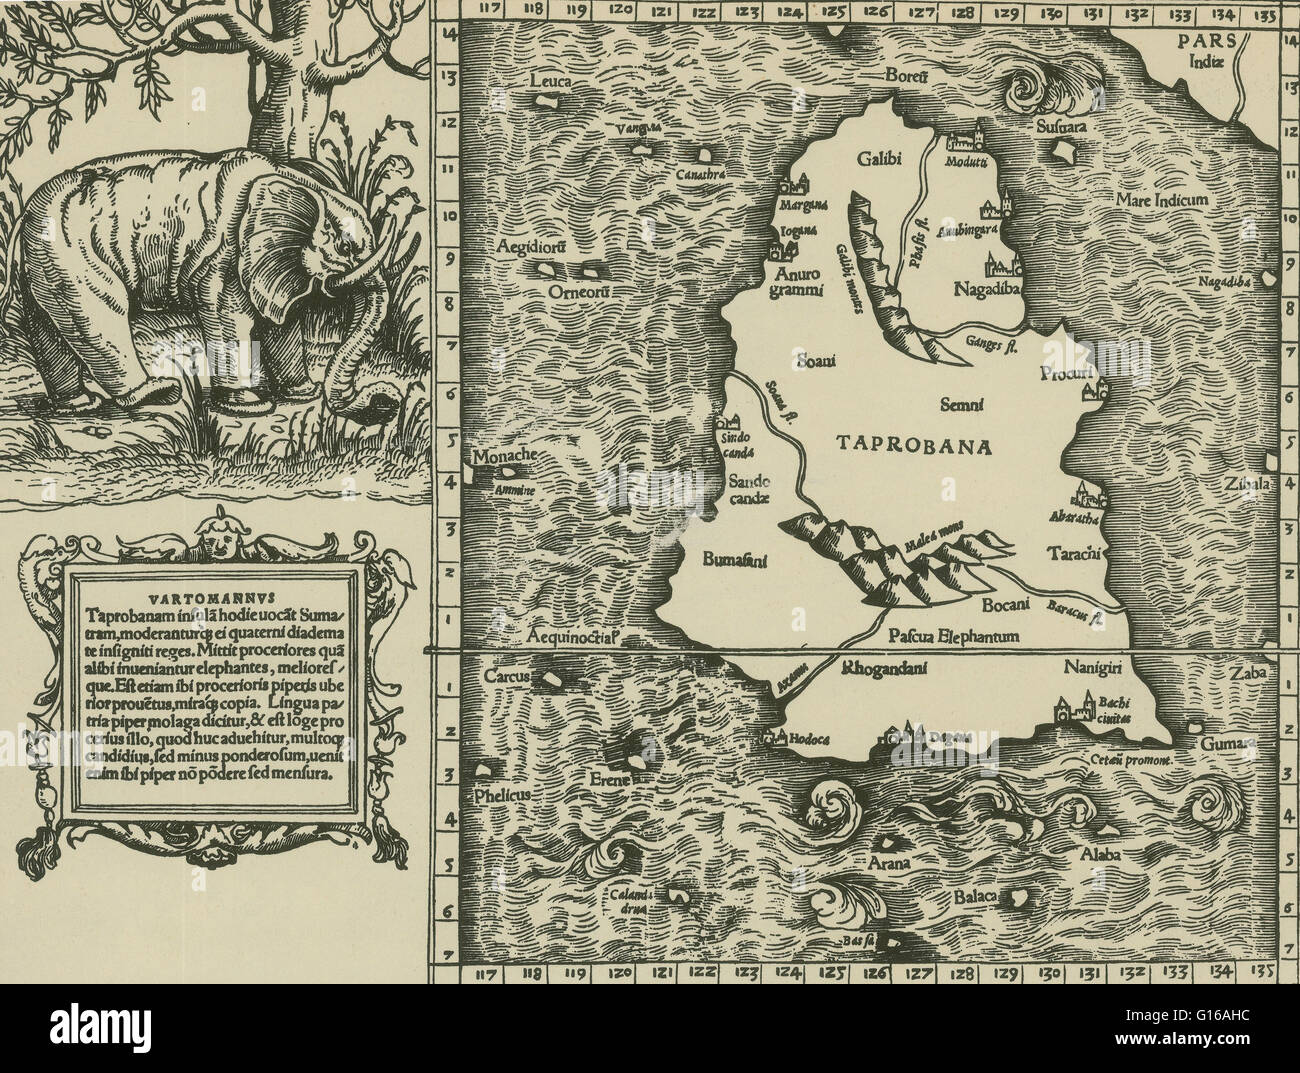 Ptolemäus-Karte von Ceylon Grundlage auf der Beschreibung enthaltenen im ptolemäischen Buch Geographia, 150 n. Chr. geschrieben. Obwohl echte Karten nie gefunden wurden, enthält der Geographia Tausende von Referenzen zu den verschiedenen Teilen der alten Welt, mit den Koordinaten für Stockfoto